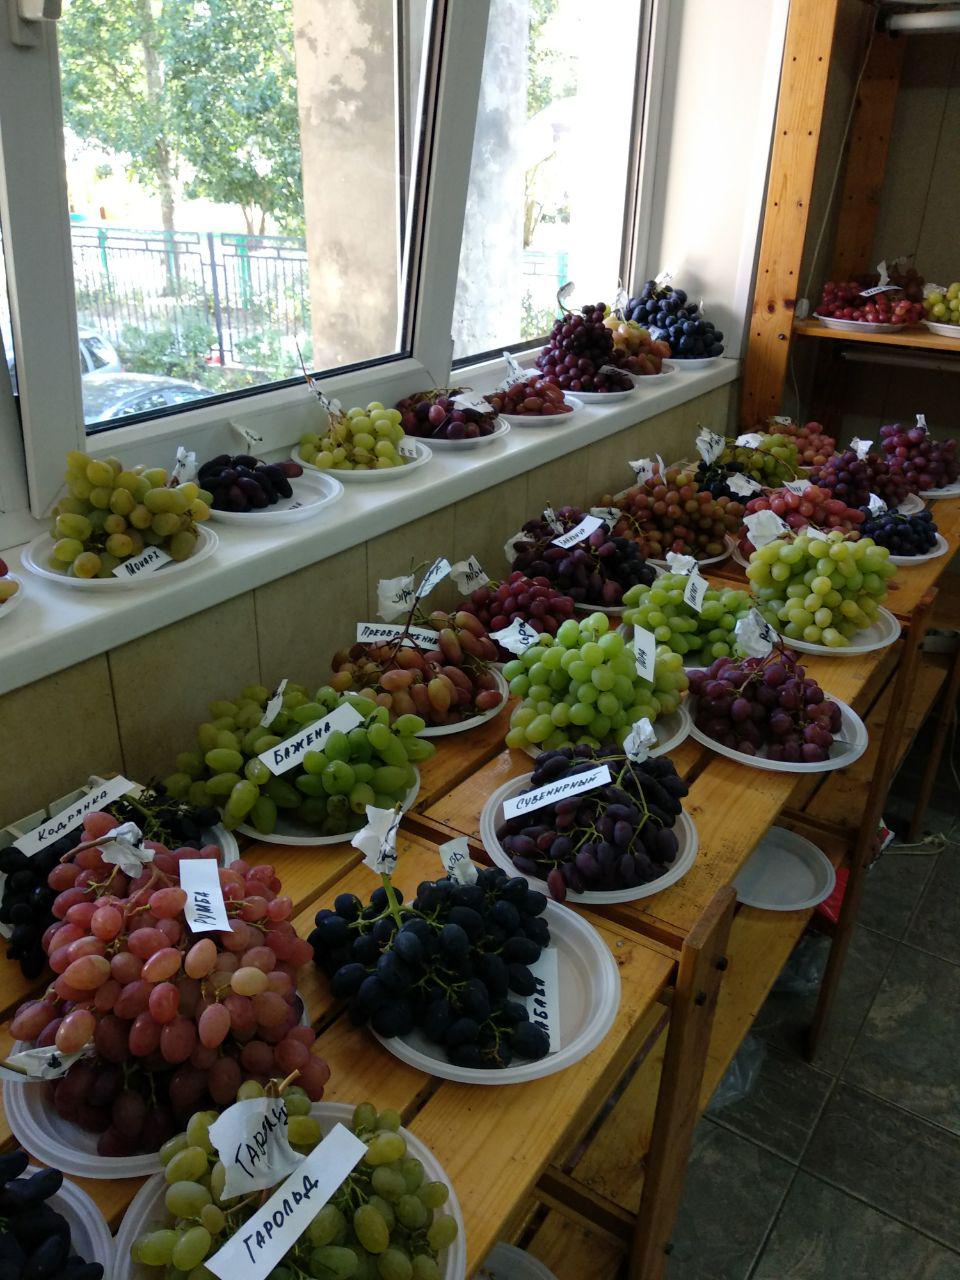 выставка винограда